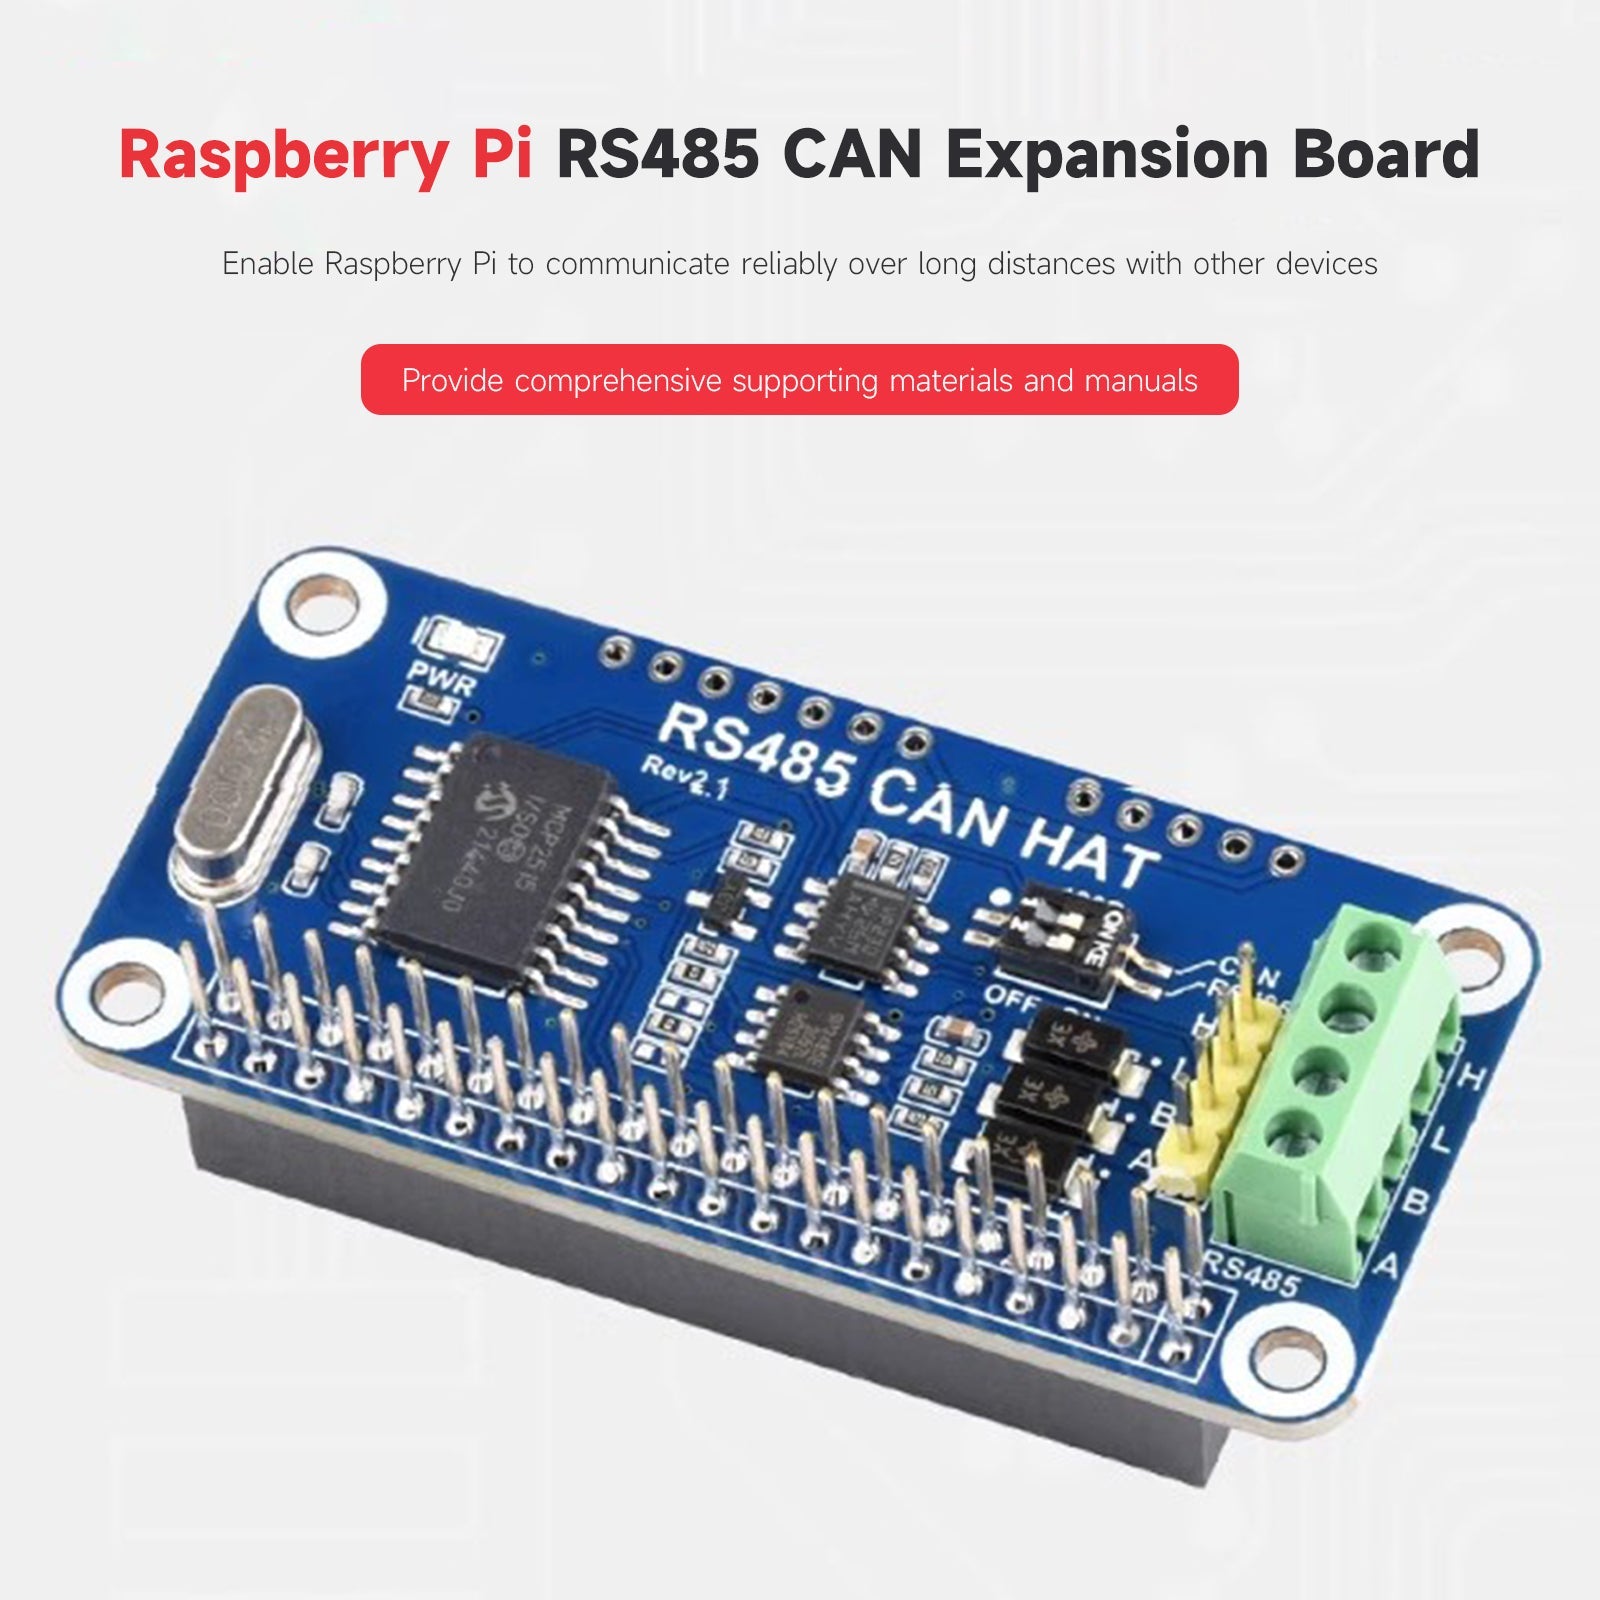 Placa de expansión Raspberry Pi RS485 CAN conmutación automática del estado del transceptor